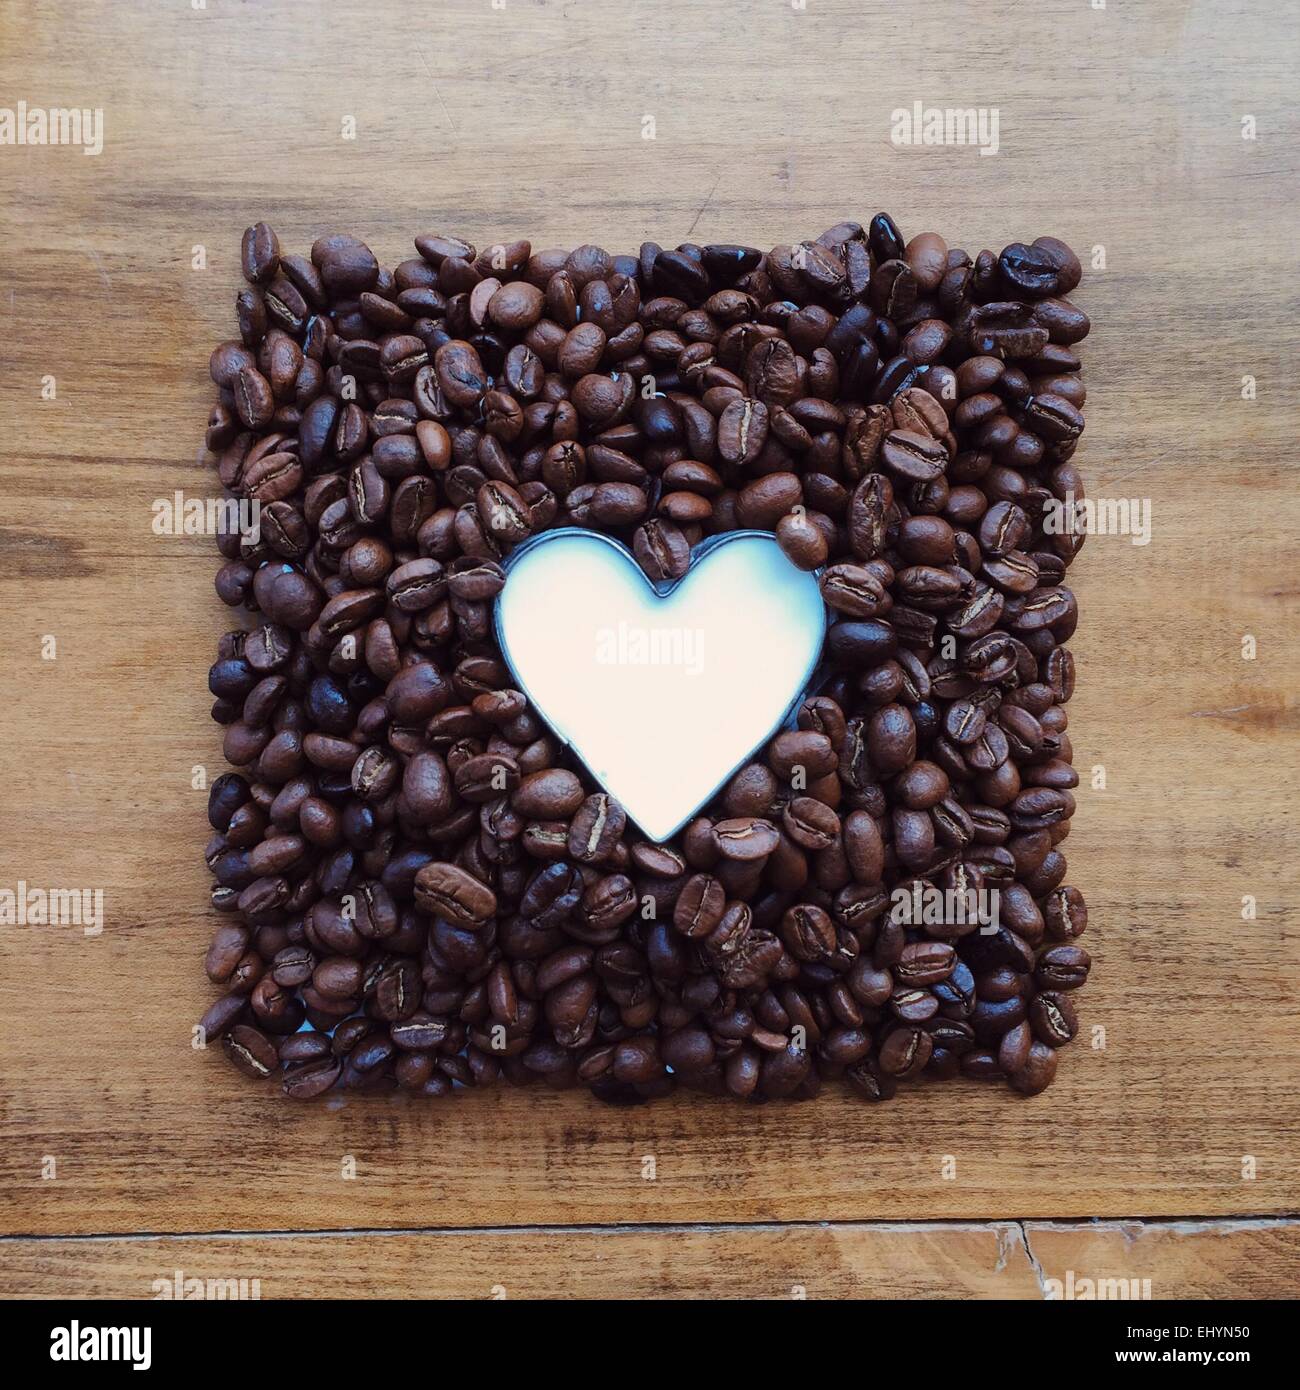 Kaffeebohnen im Quadrat, rund um ein Herz geformt Kaffeesahne Stockfoto